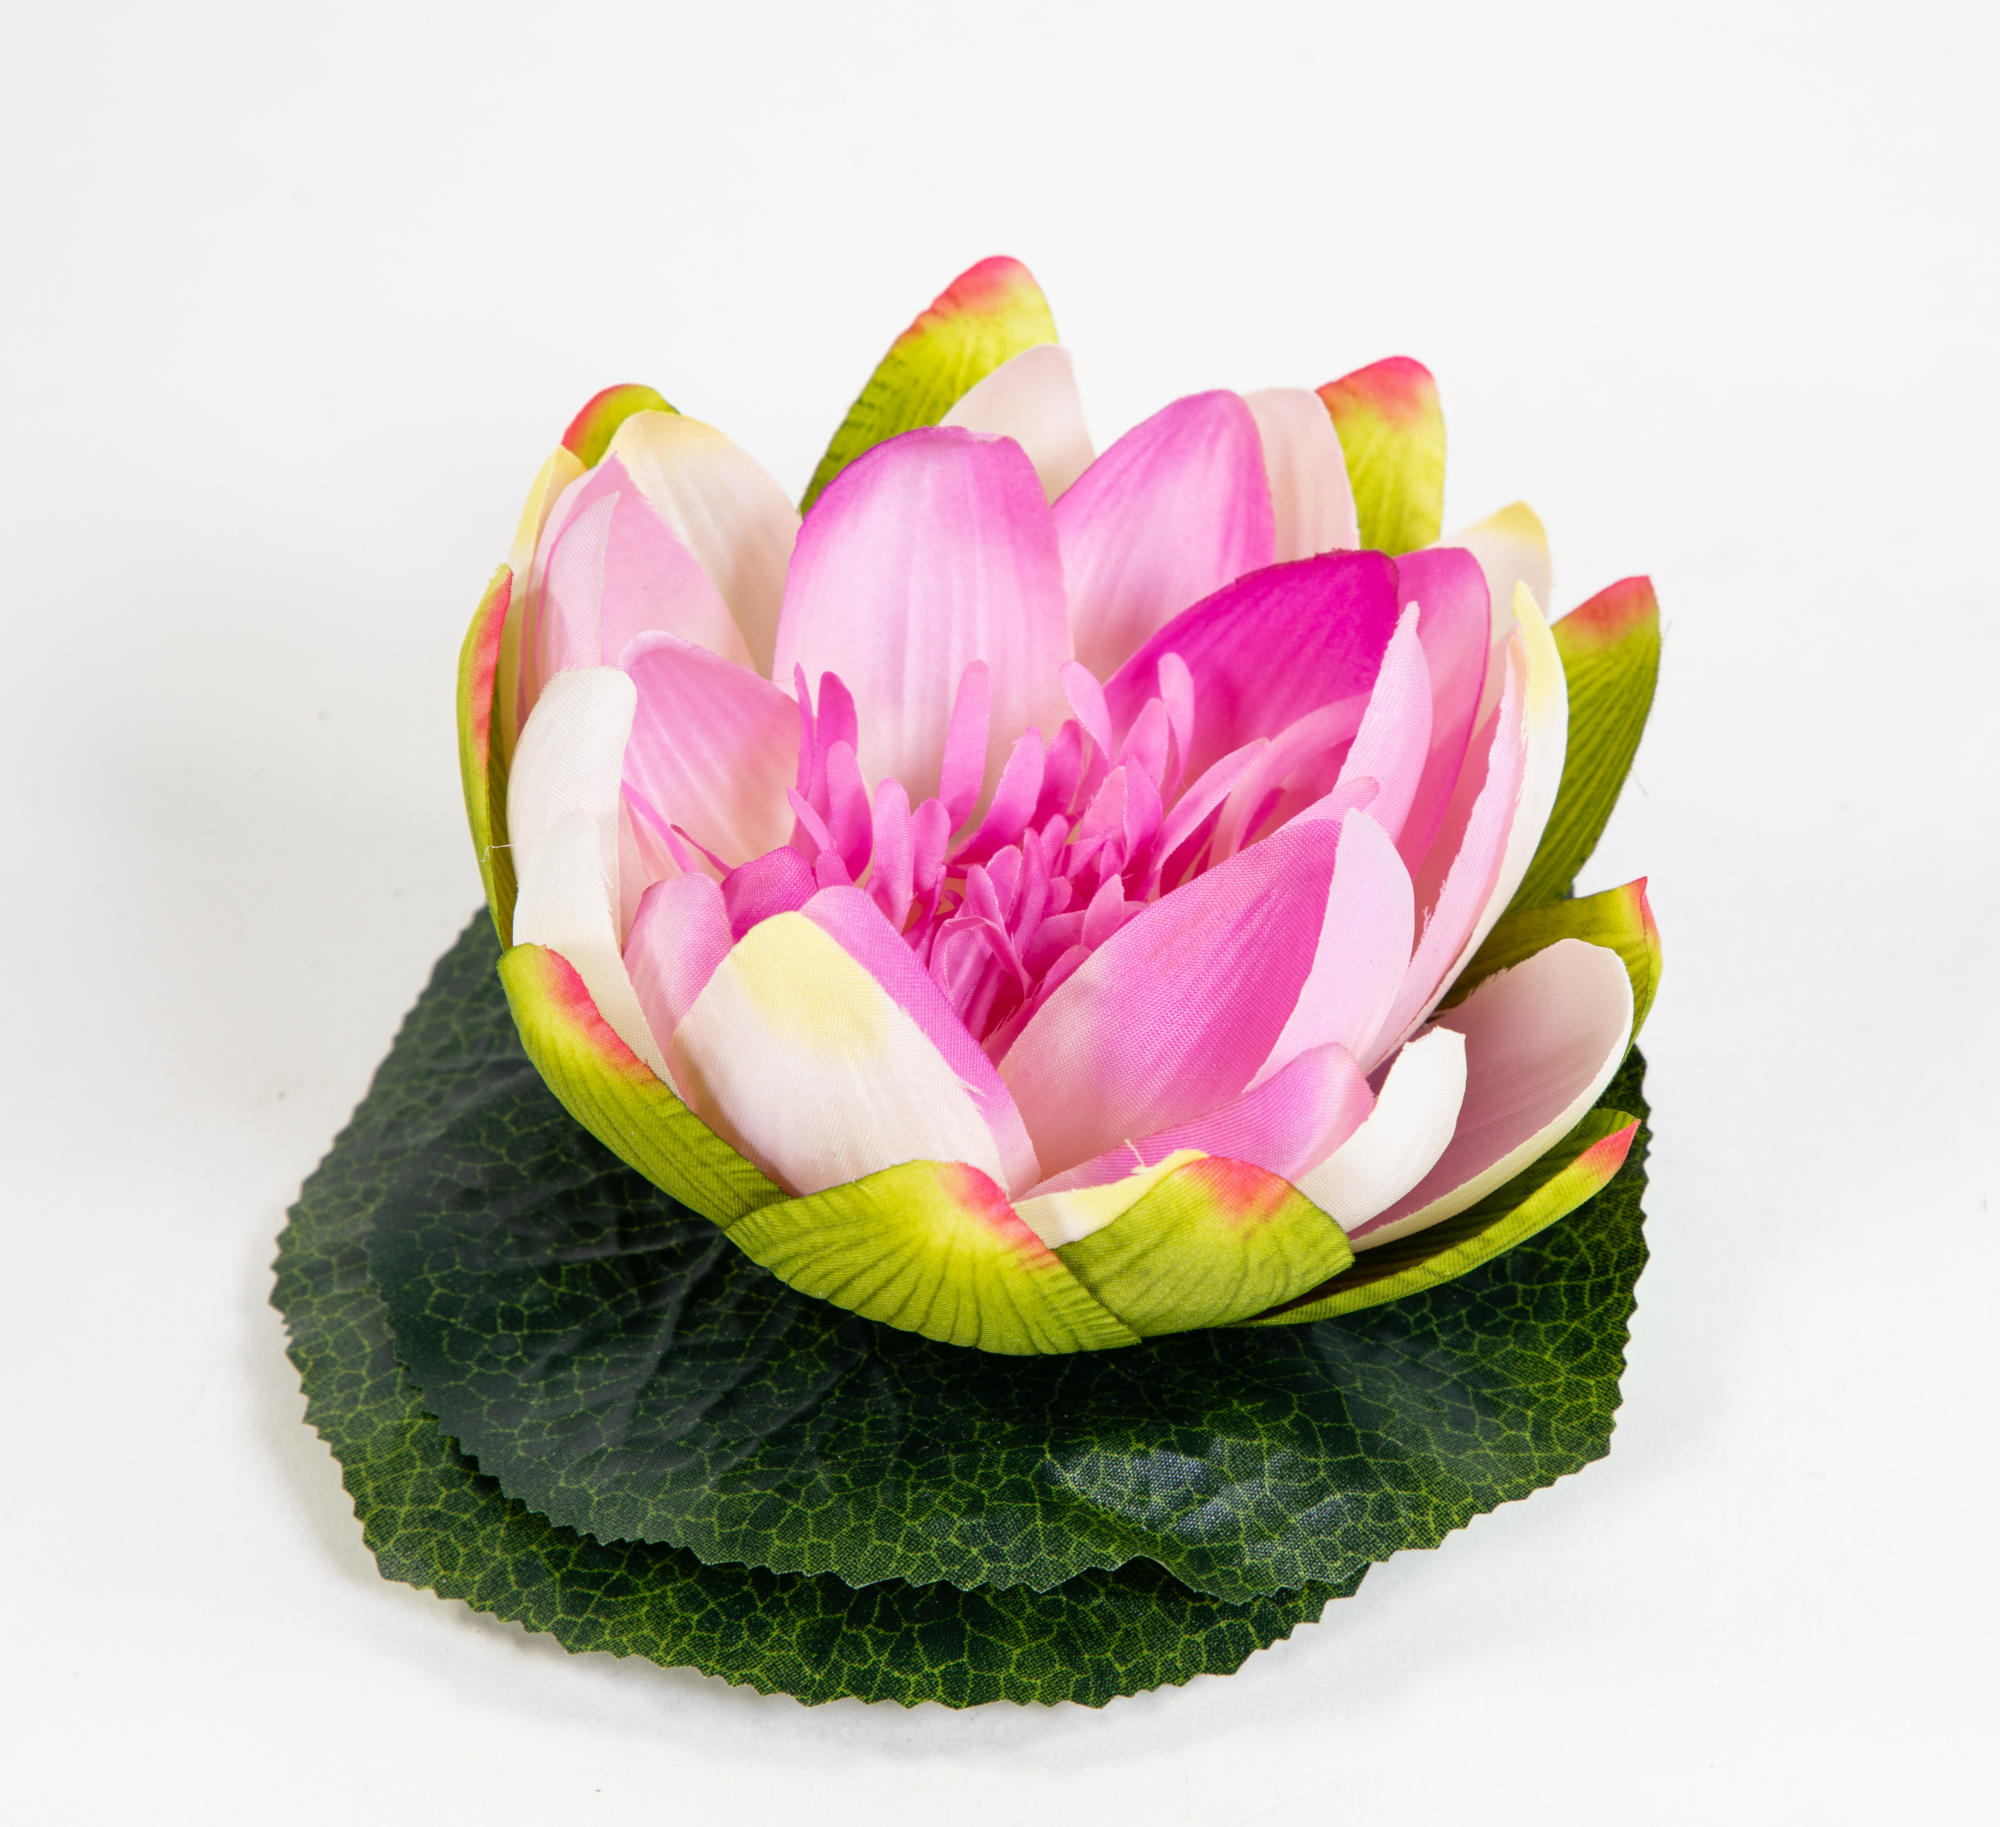 Lotusblüte / Seerose 17x15cm lila-weiß JA Kunstblumen künstliche Blumen Rose Schwimmrose Lotus Nymphaea